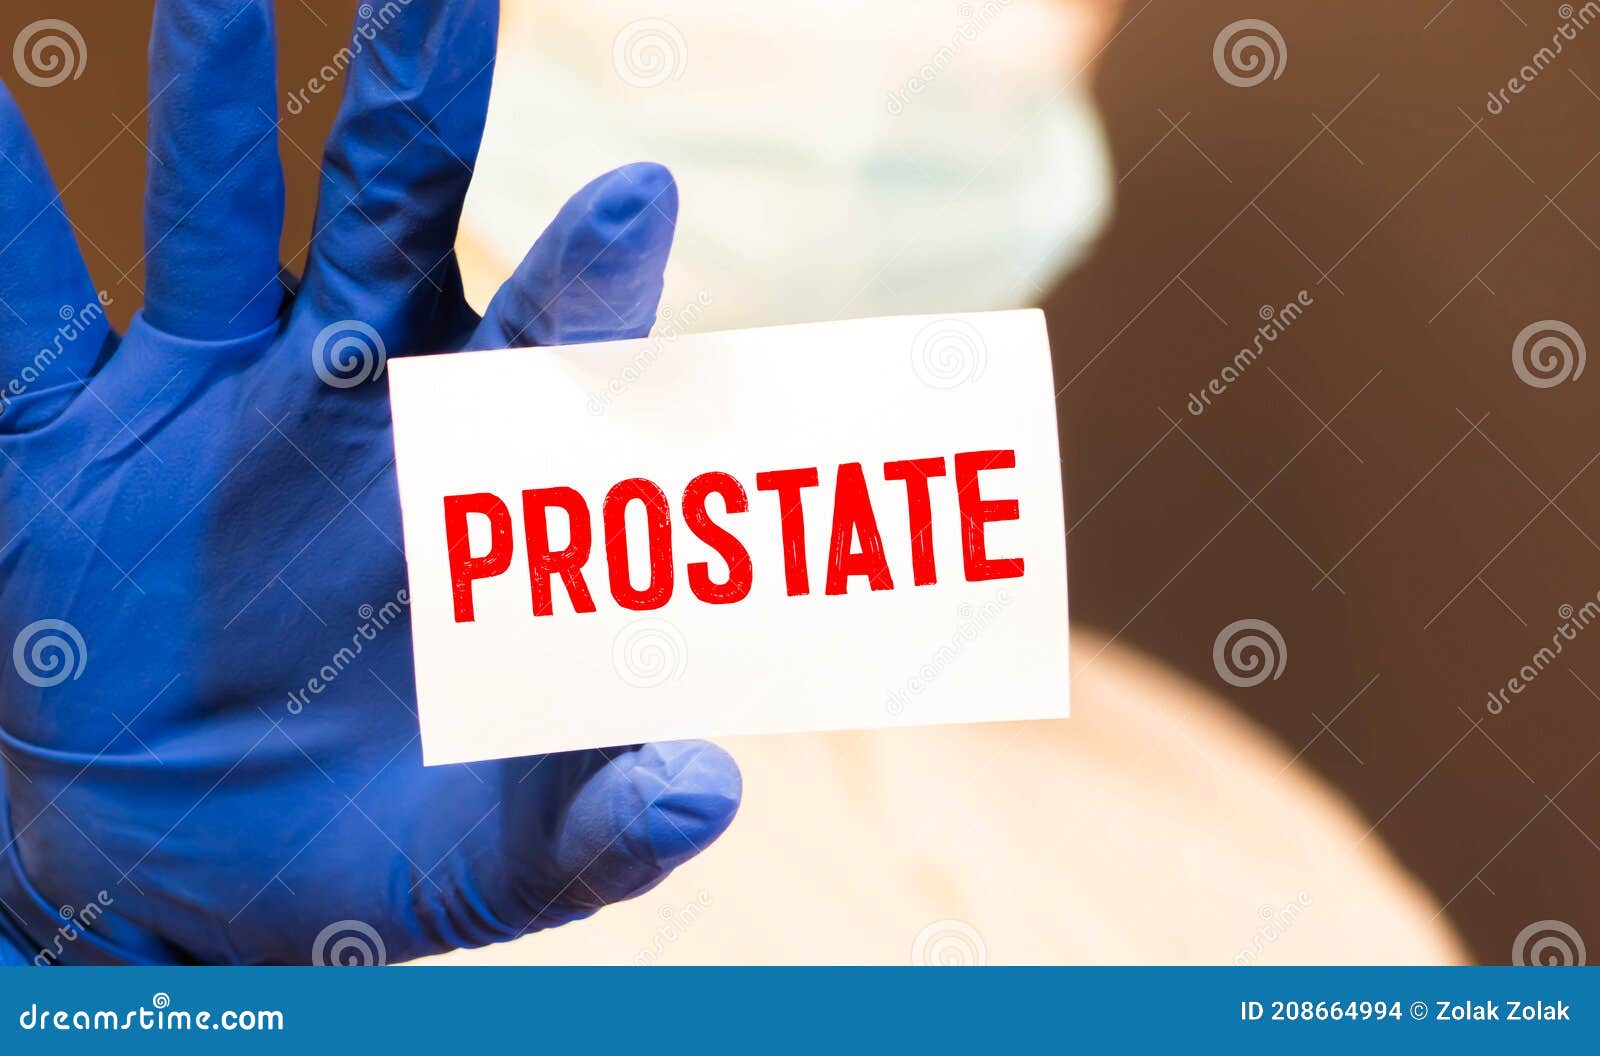 zoflox a prosztatitis törlés és prosztatitis